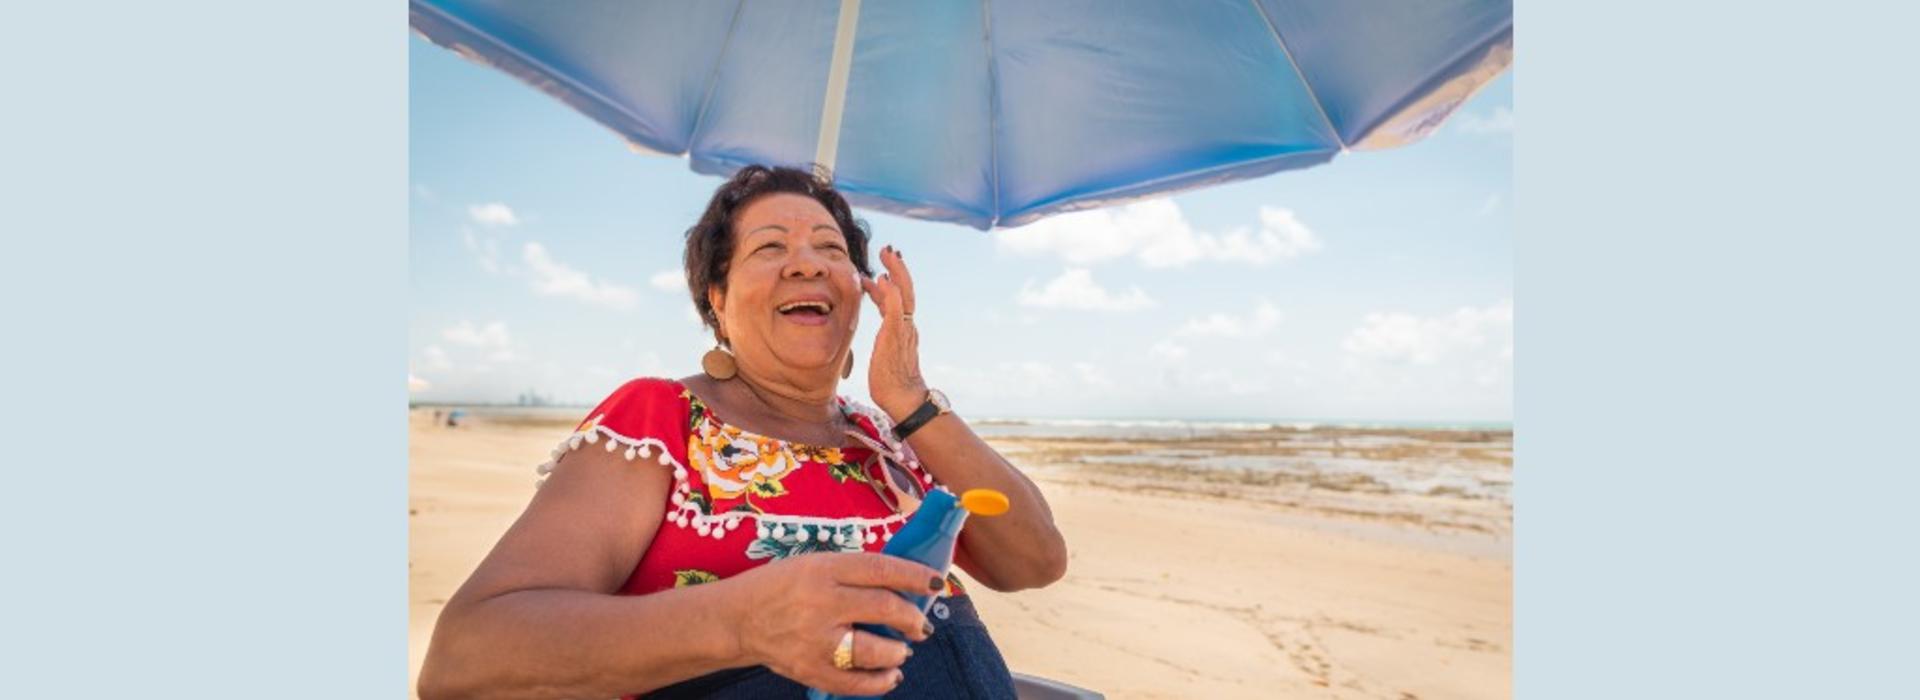 Senior woman using a suntan lotion on the beach